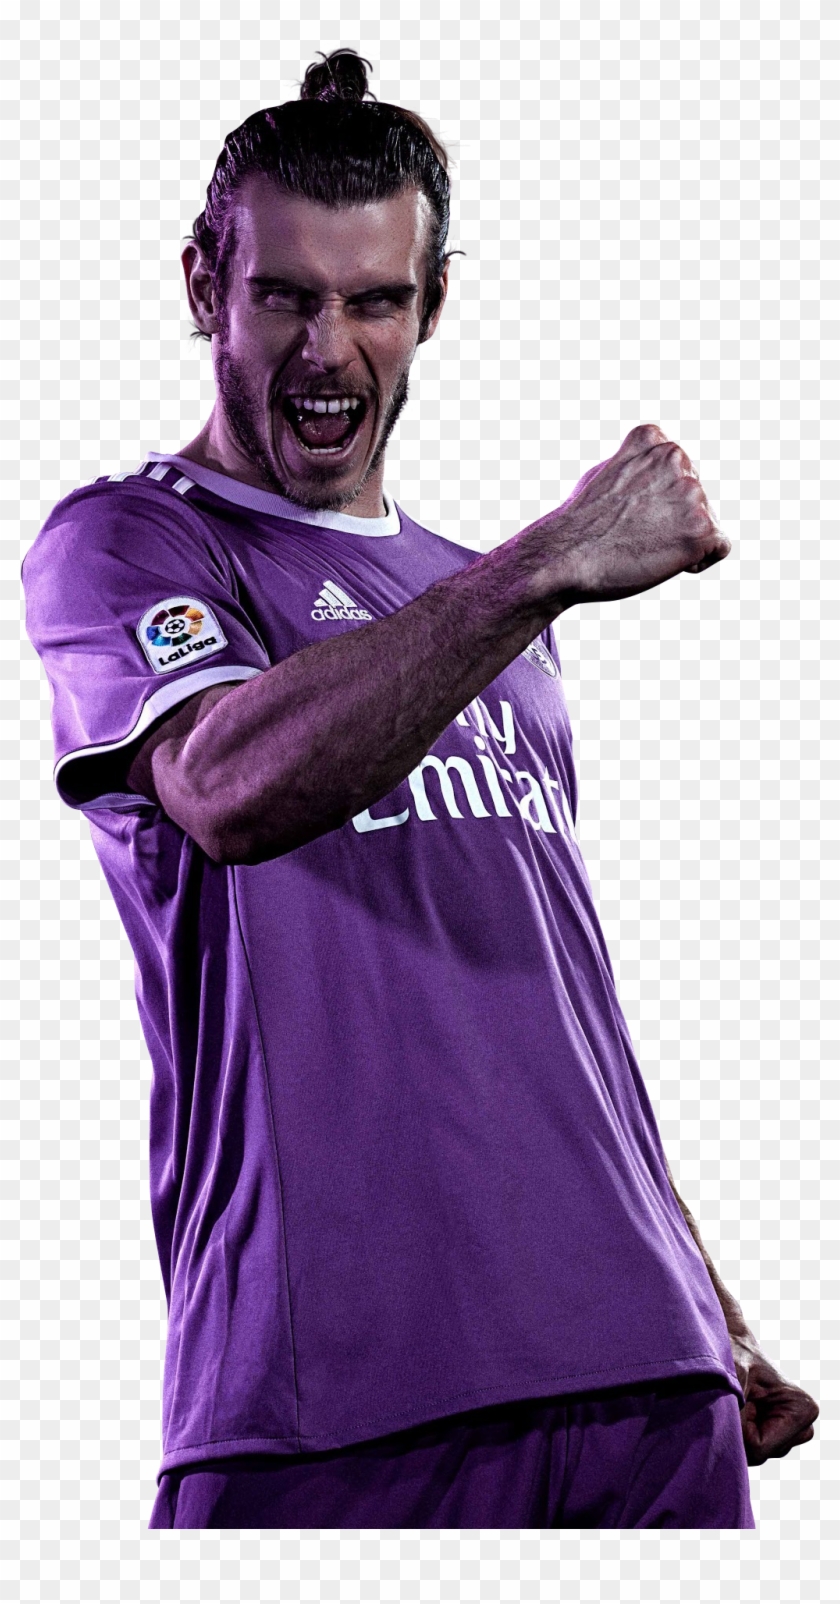 Gareth Bale Render - Gareth Bale Clipart